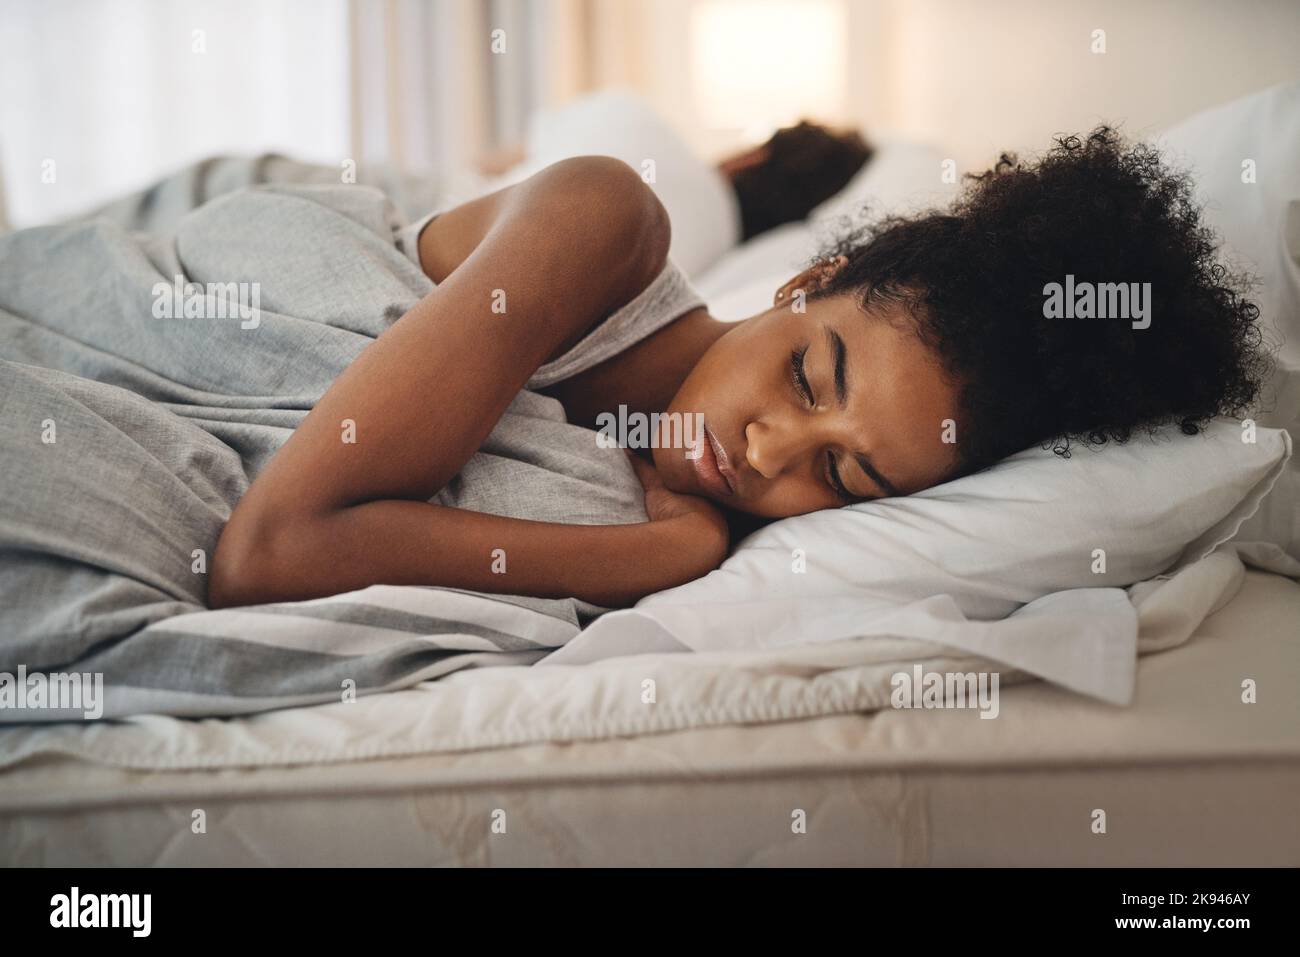 Odio andare a letto con questa sensazione: Una giovane donna che guarda turbata mentre si sdraiava a letto con la sua partner. Foto Stock